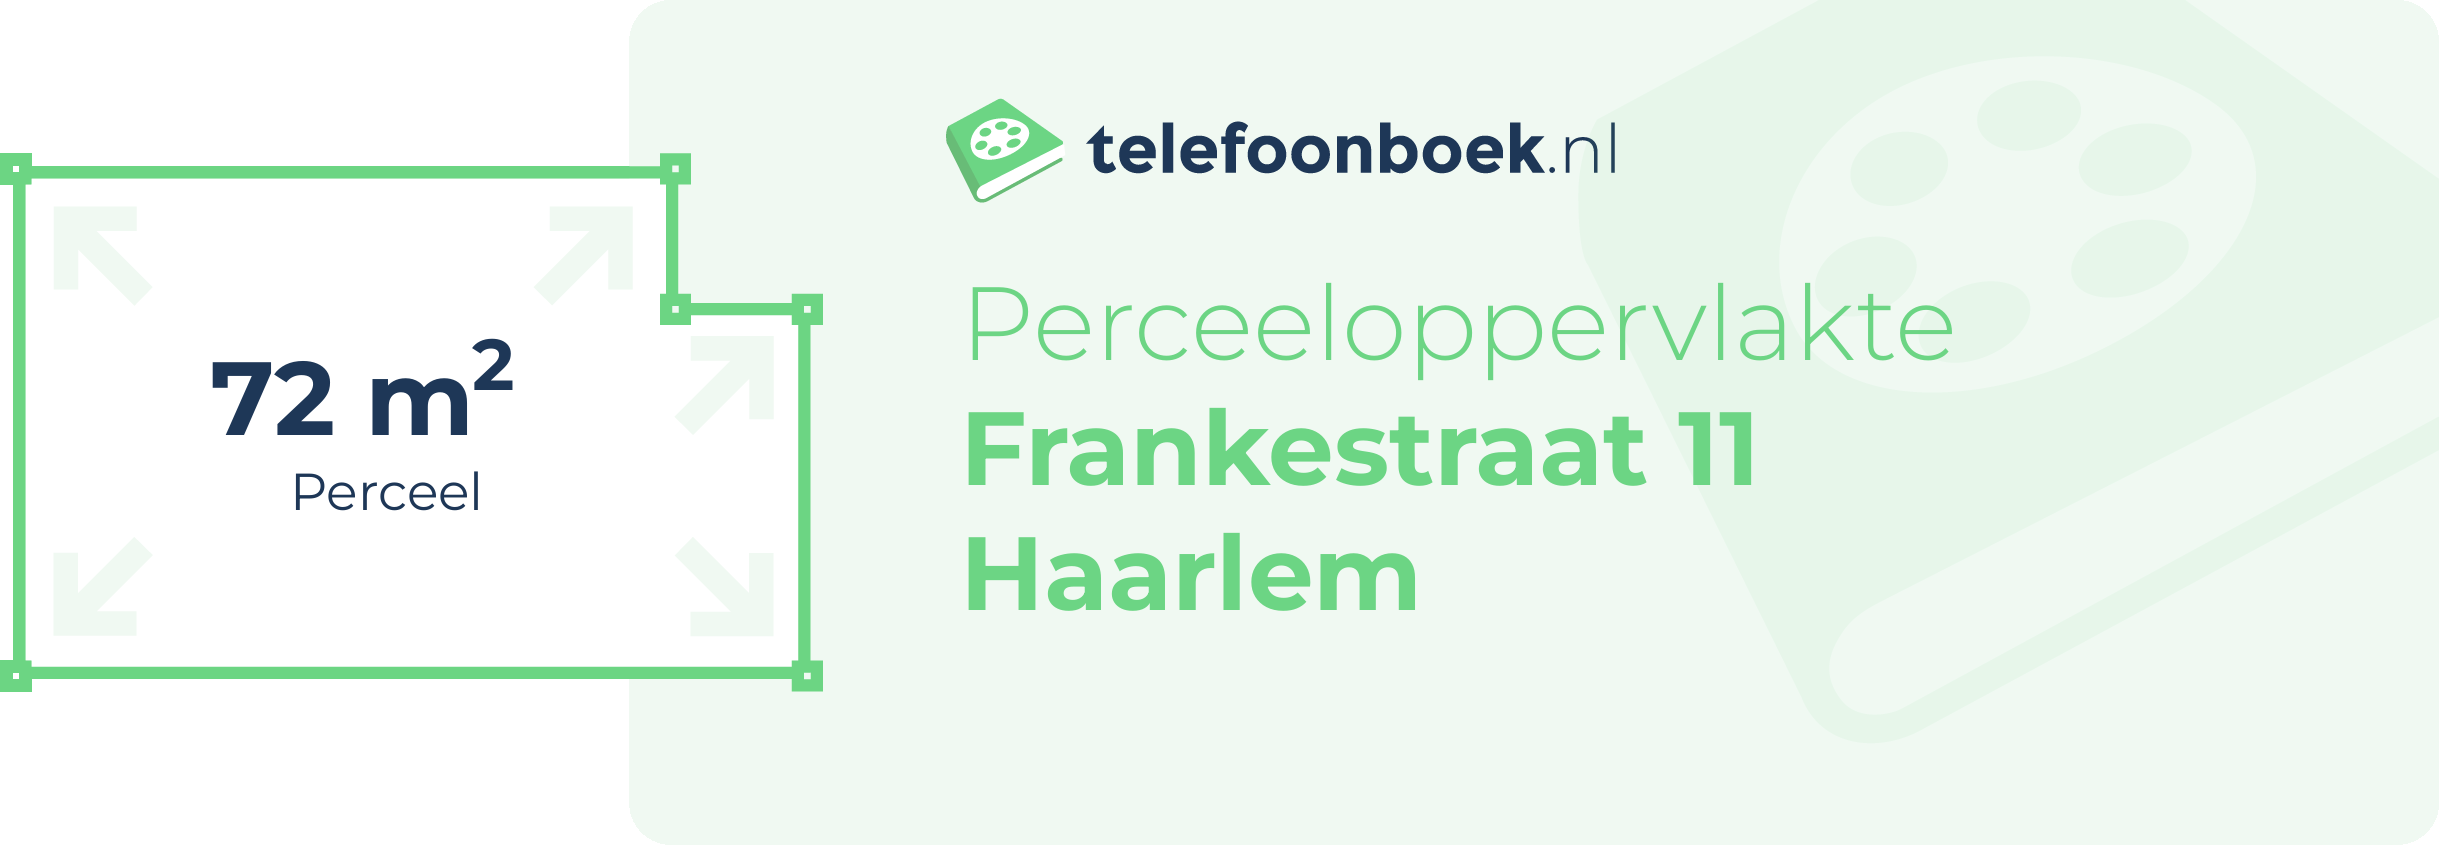 Perceeloppervlakte Frankestraat 11 Haarlem